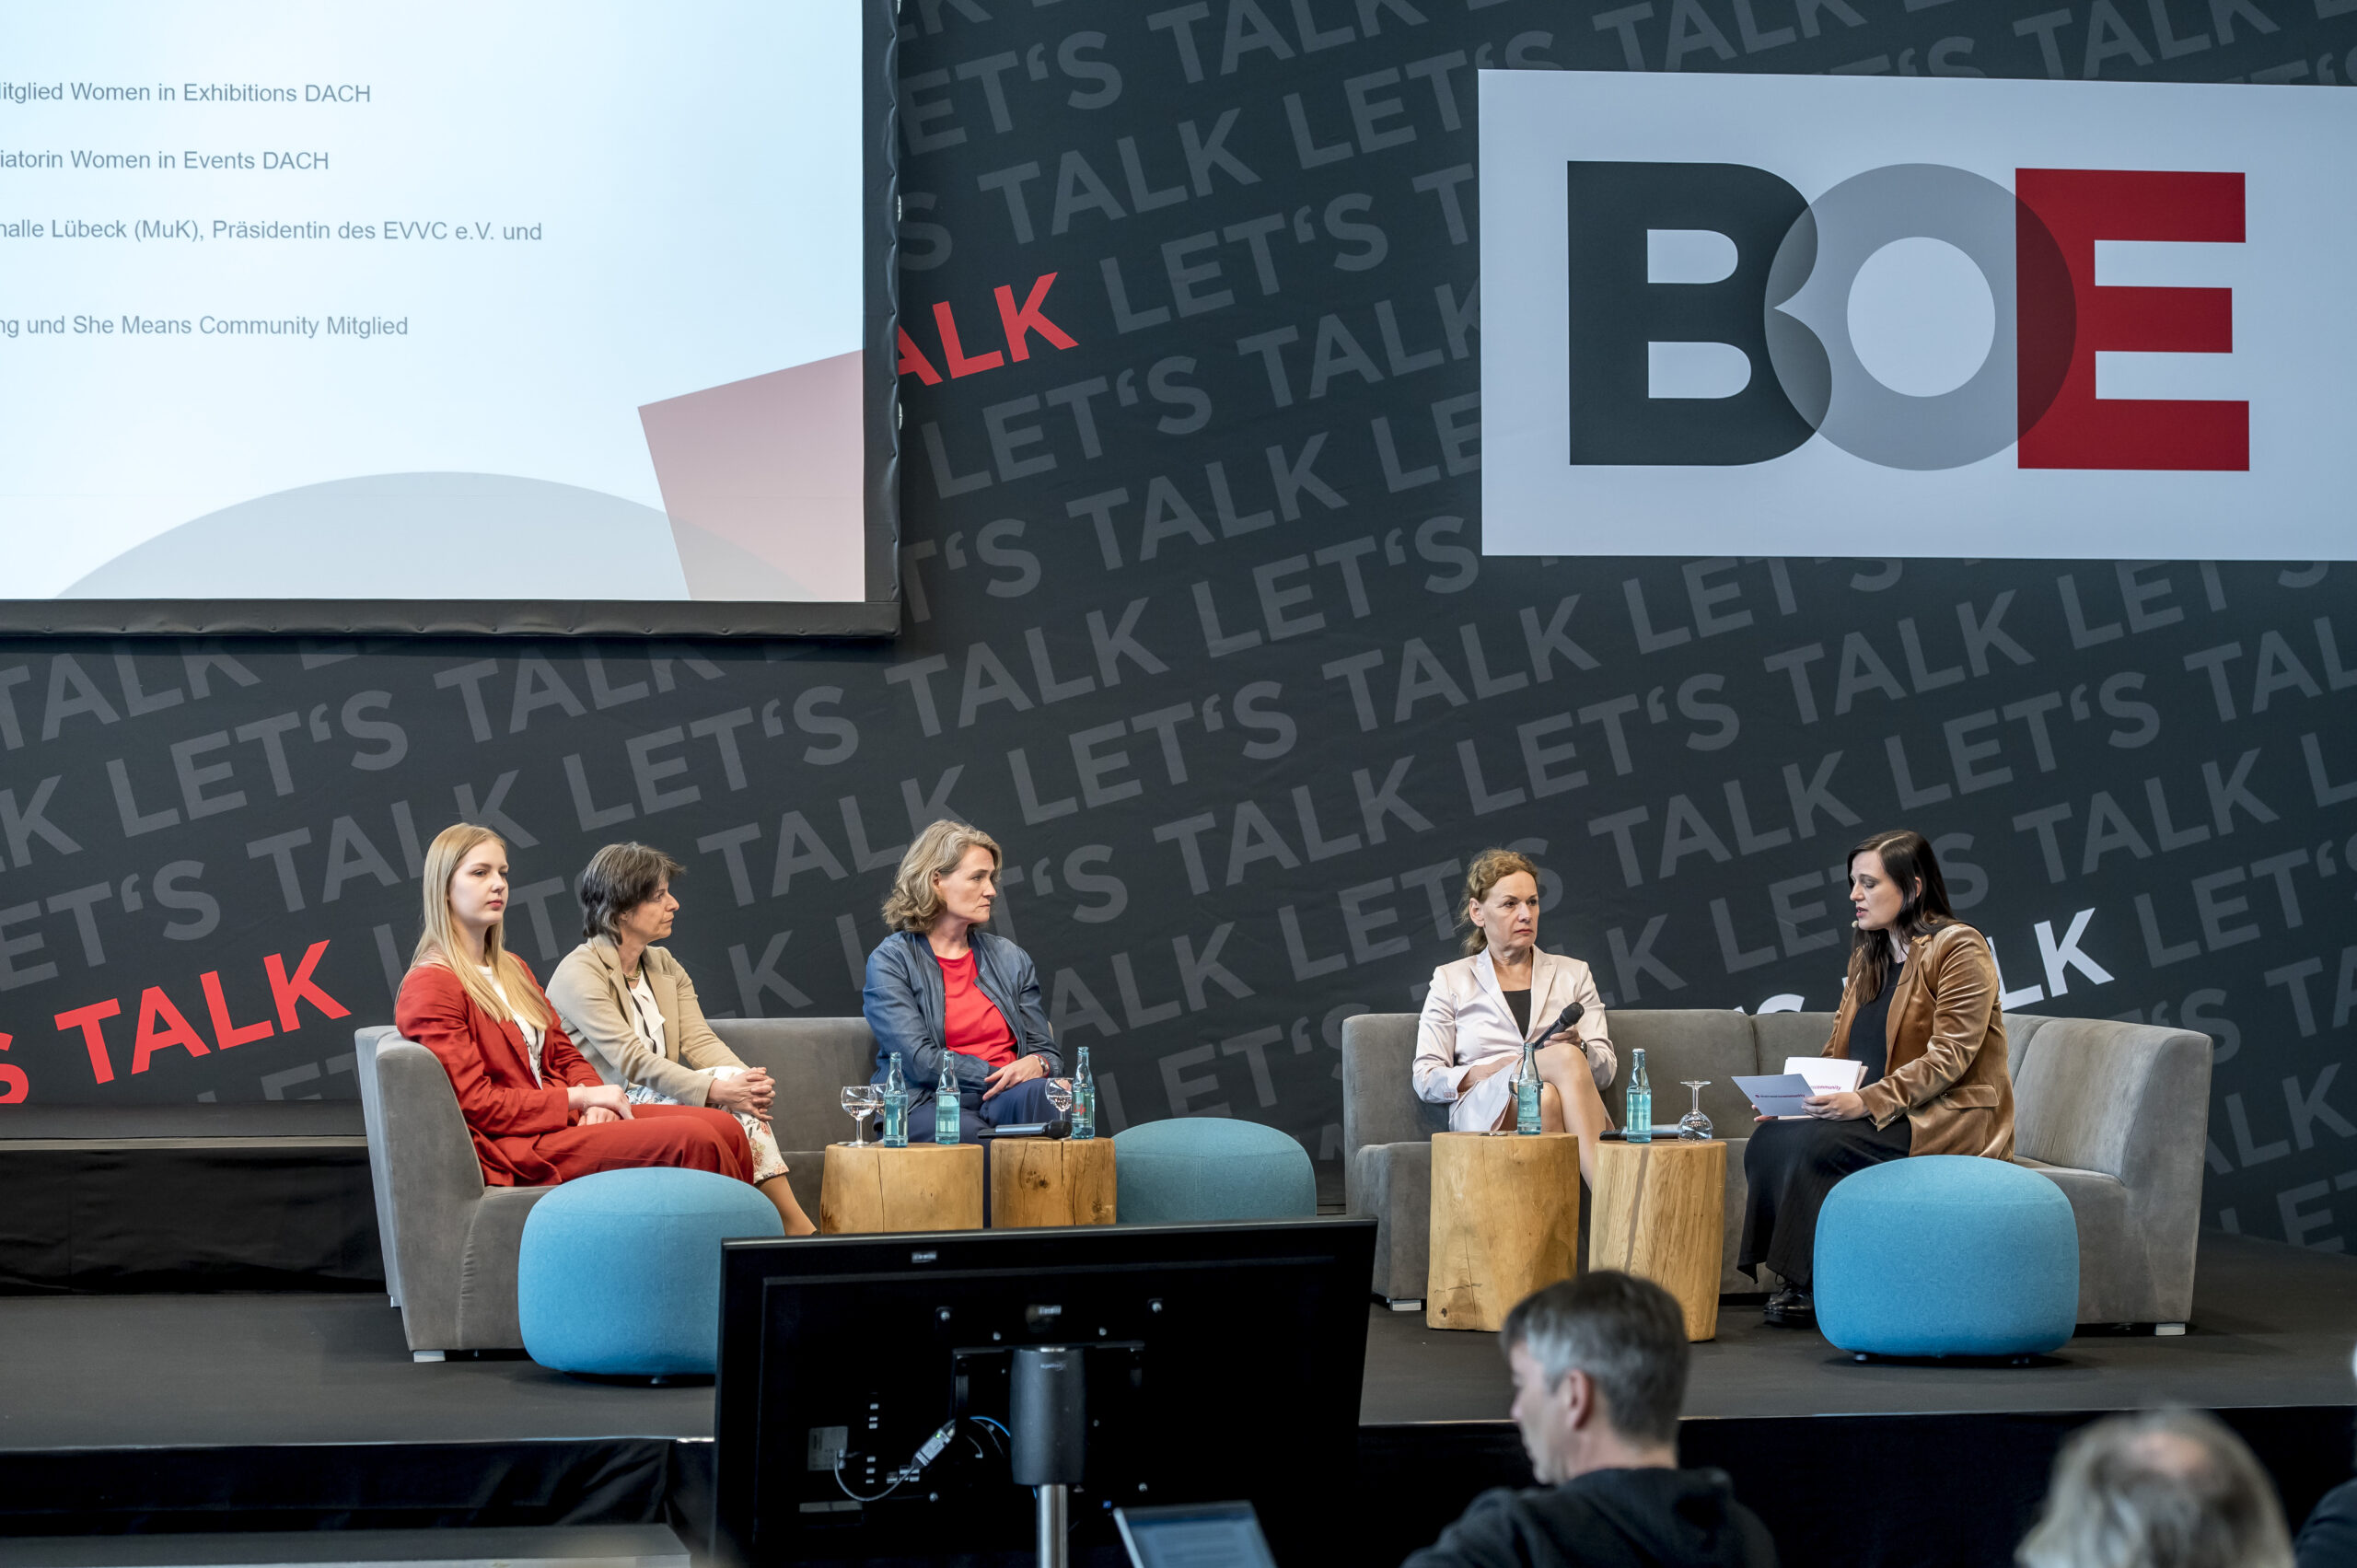 Foto vom Podium mit den vier Diskutantinnen Linda Eifert, Ilona Jarabek, Kerstin Hoffmann-Wagner, Sabine Loos und der Moderatorin Karin Ruppert (von links nach rechts). Im Hintergrund ist groß das Logo der BOE zu sehen.